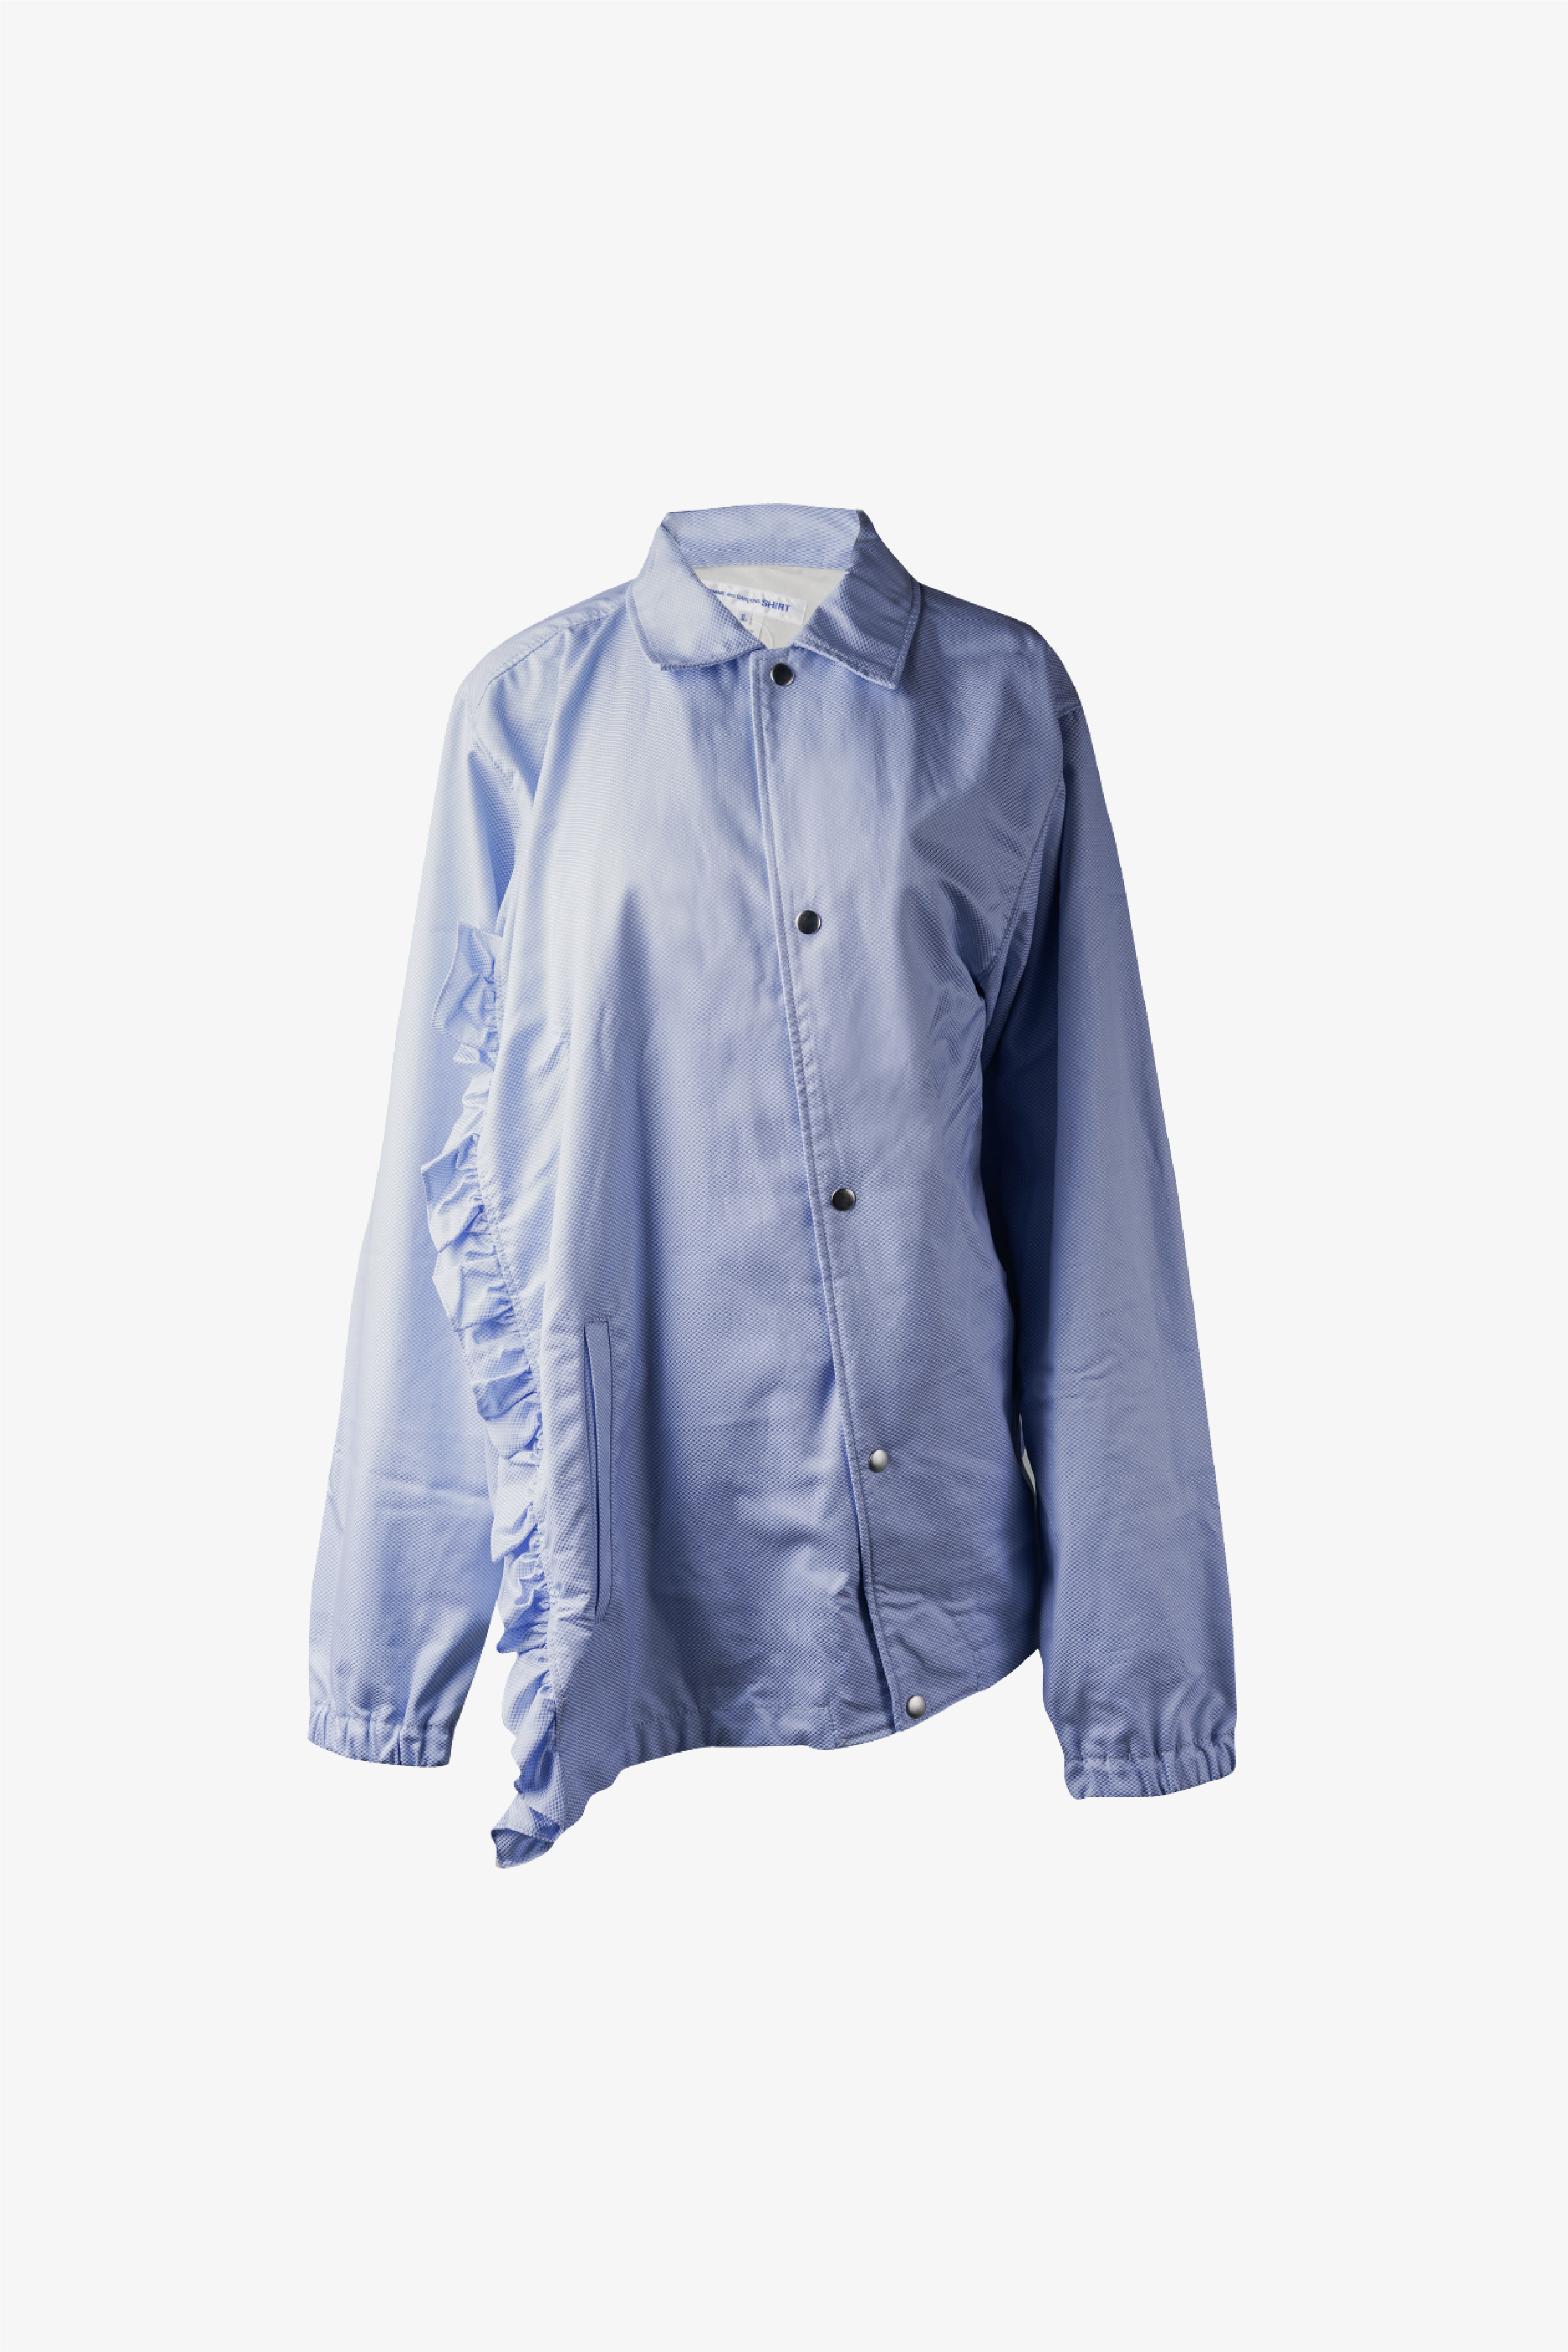 Selectshop FRAME - COMME DES GARÇONS SHIRT Jacket Outerwear Dubai